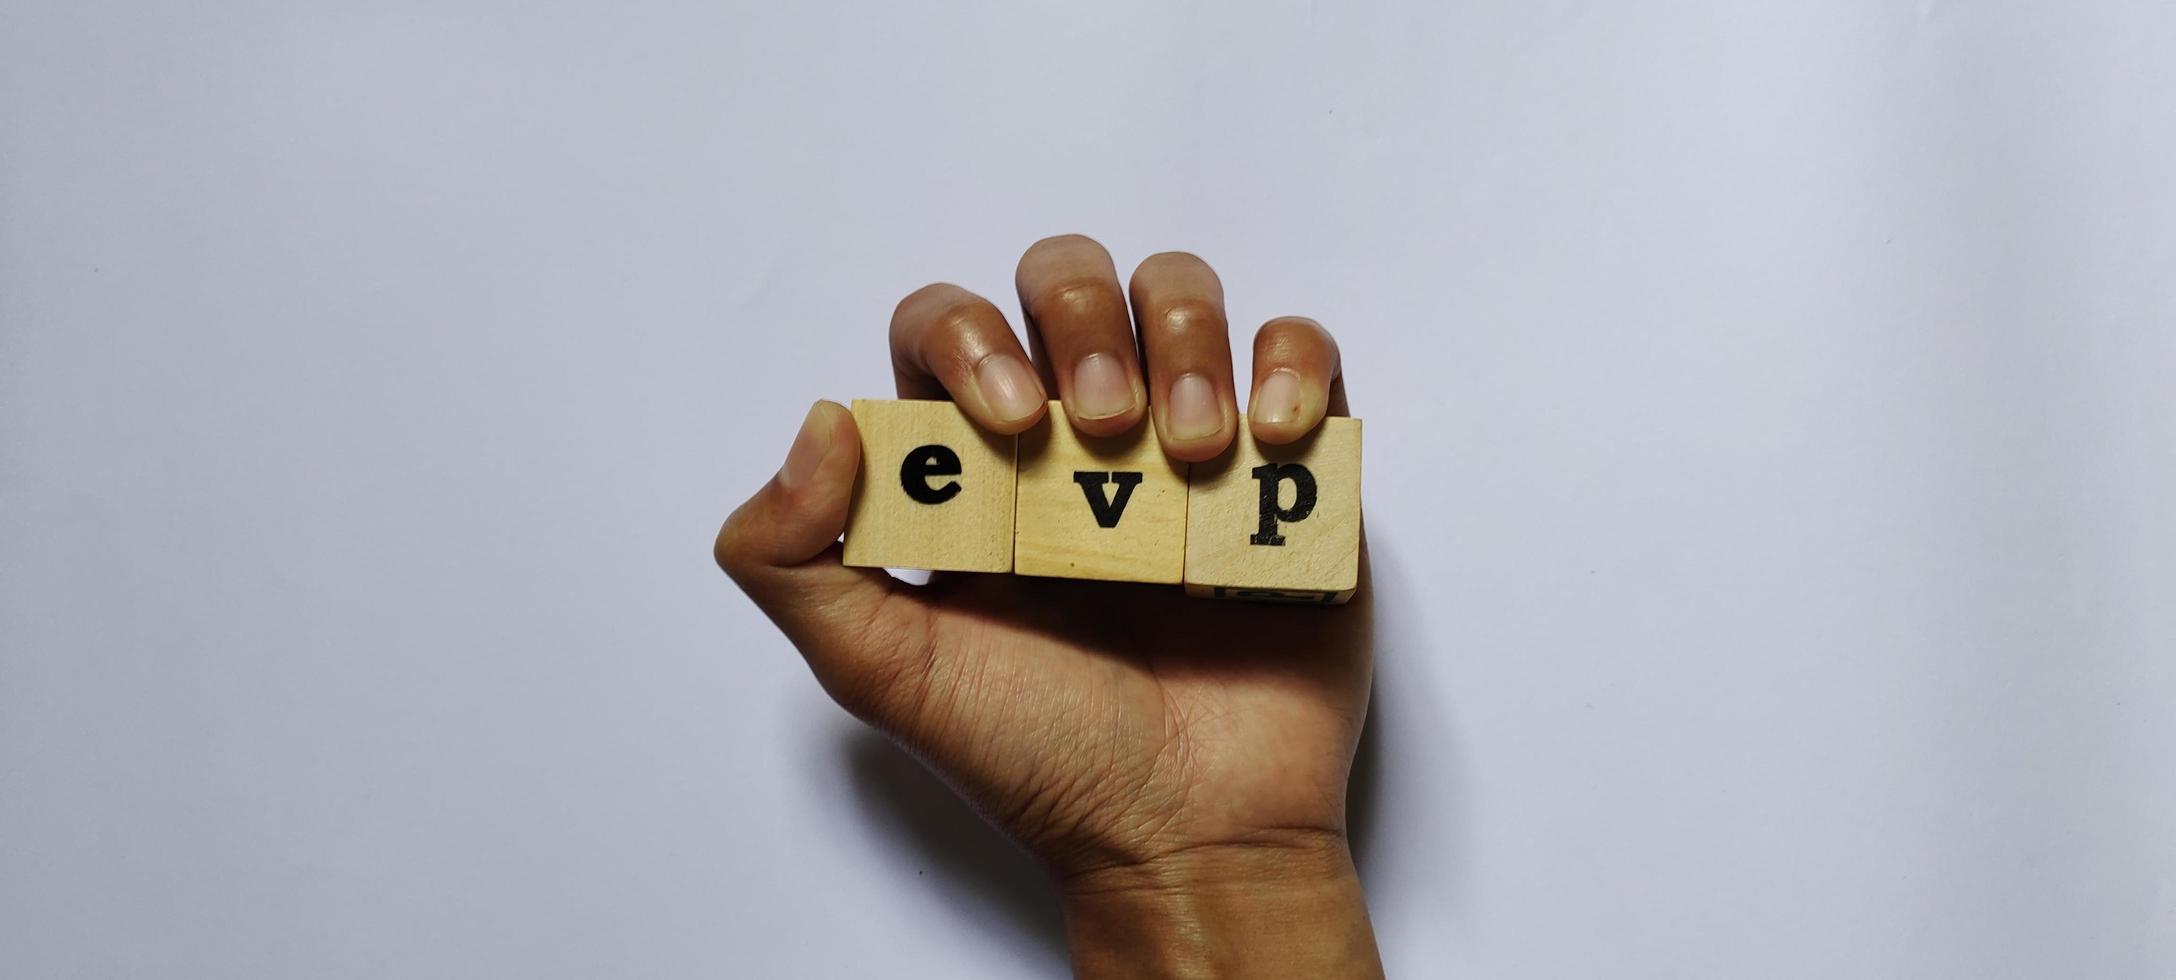 EVP employee value proposition, conceptual business illustration photo